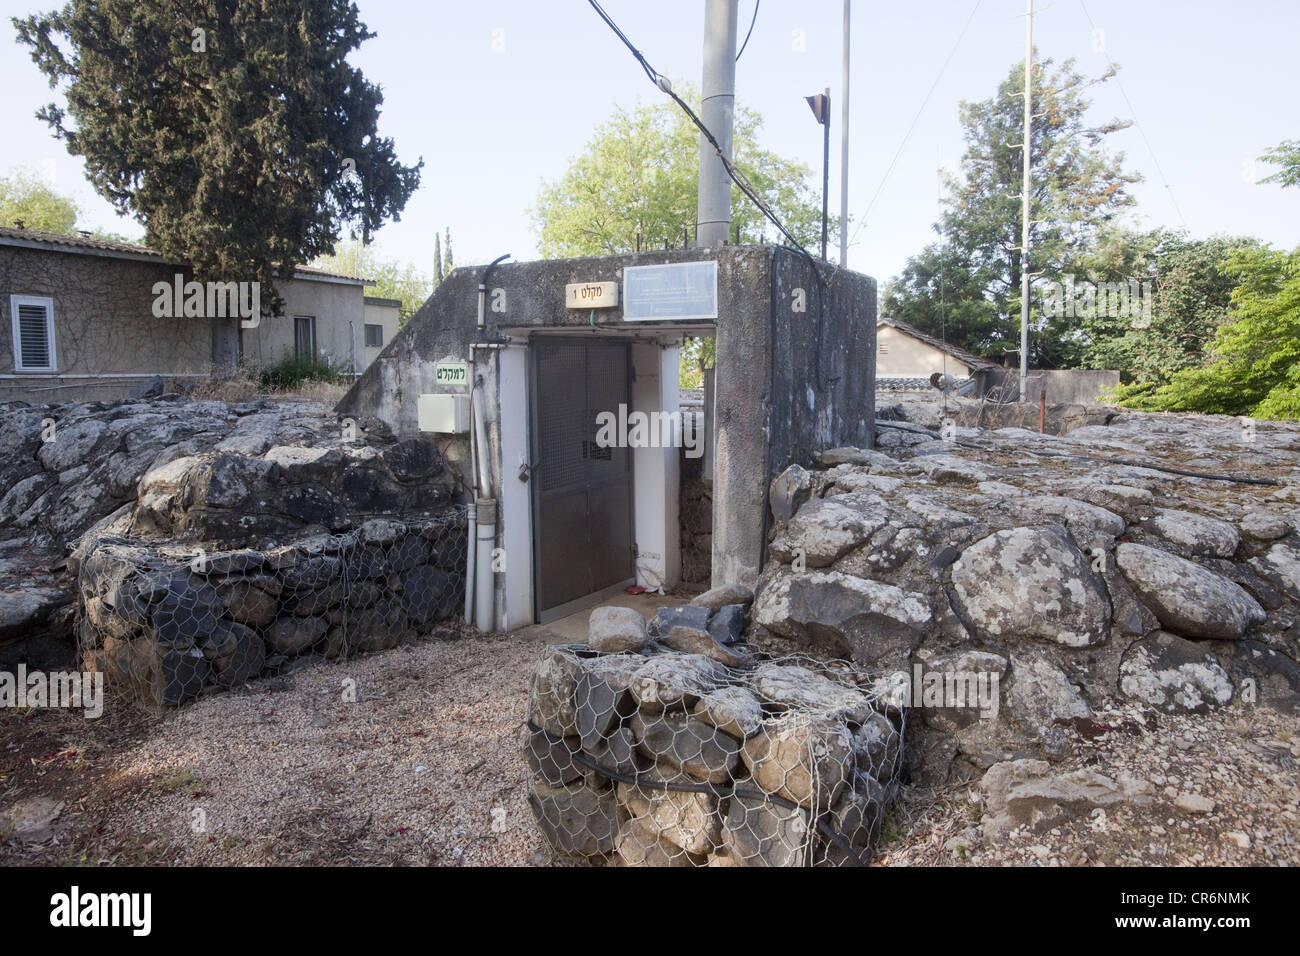 Bomb shelter at the Kibbutz Kfar Szold, Israel Stock Photo